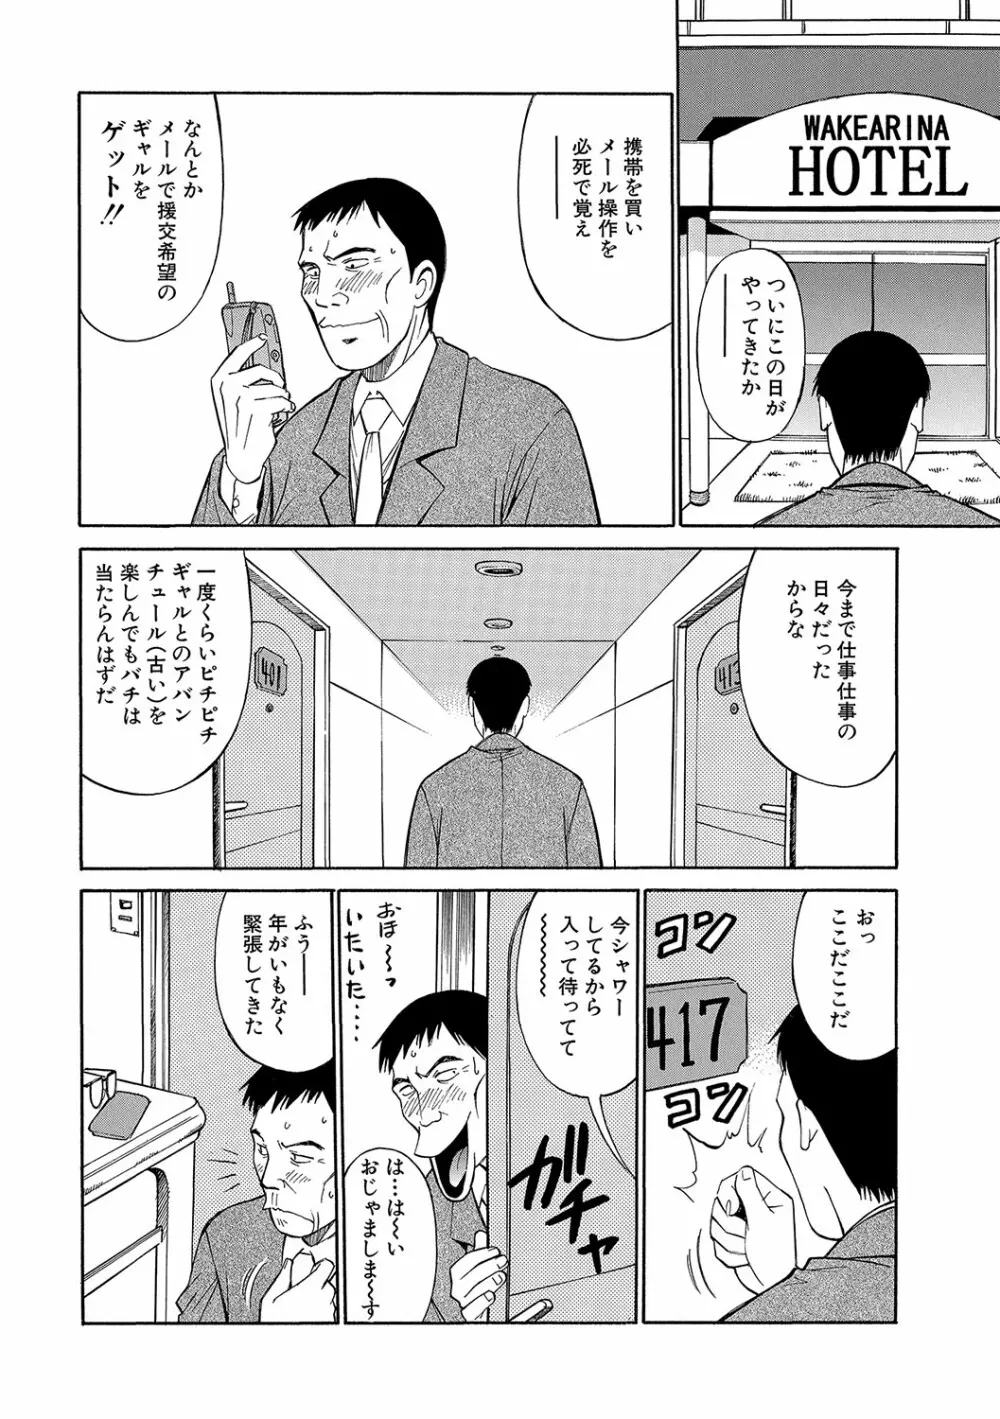 WEB版コミック激ヤバ! vol.96 129ページ